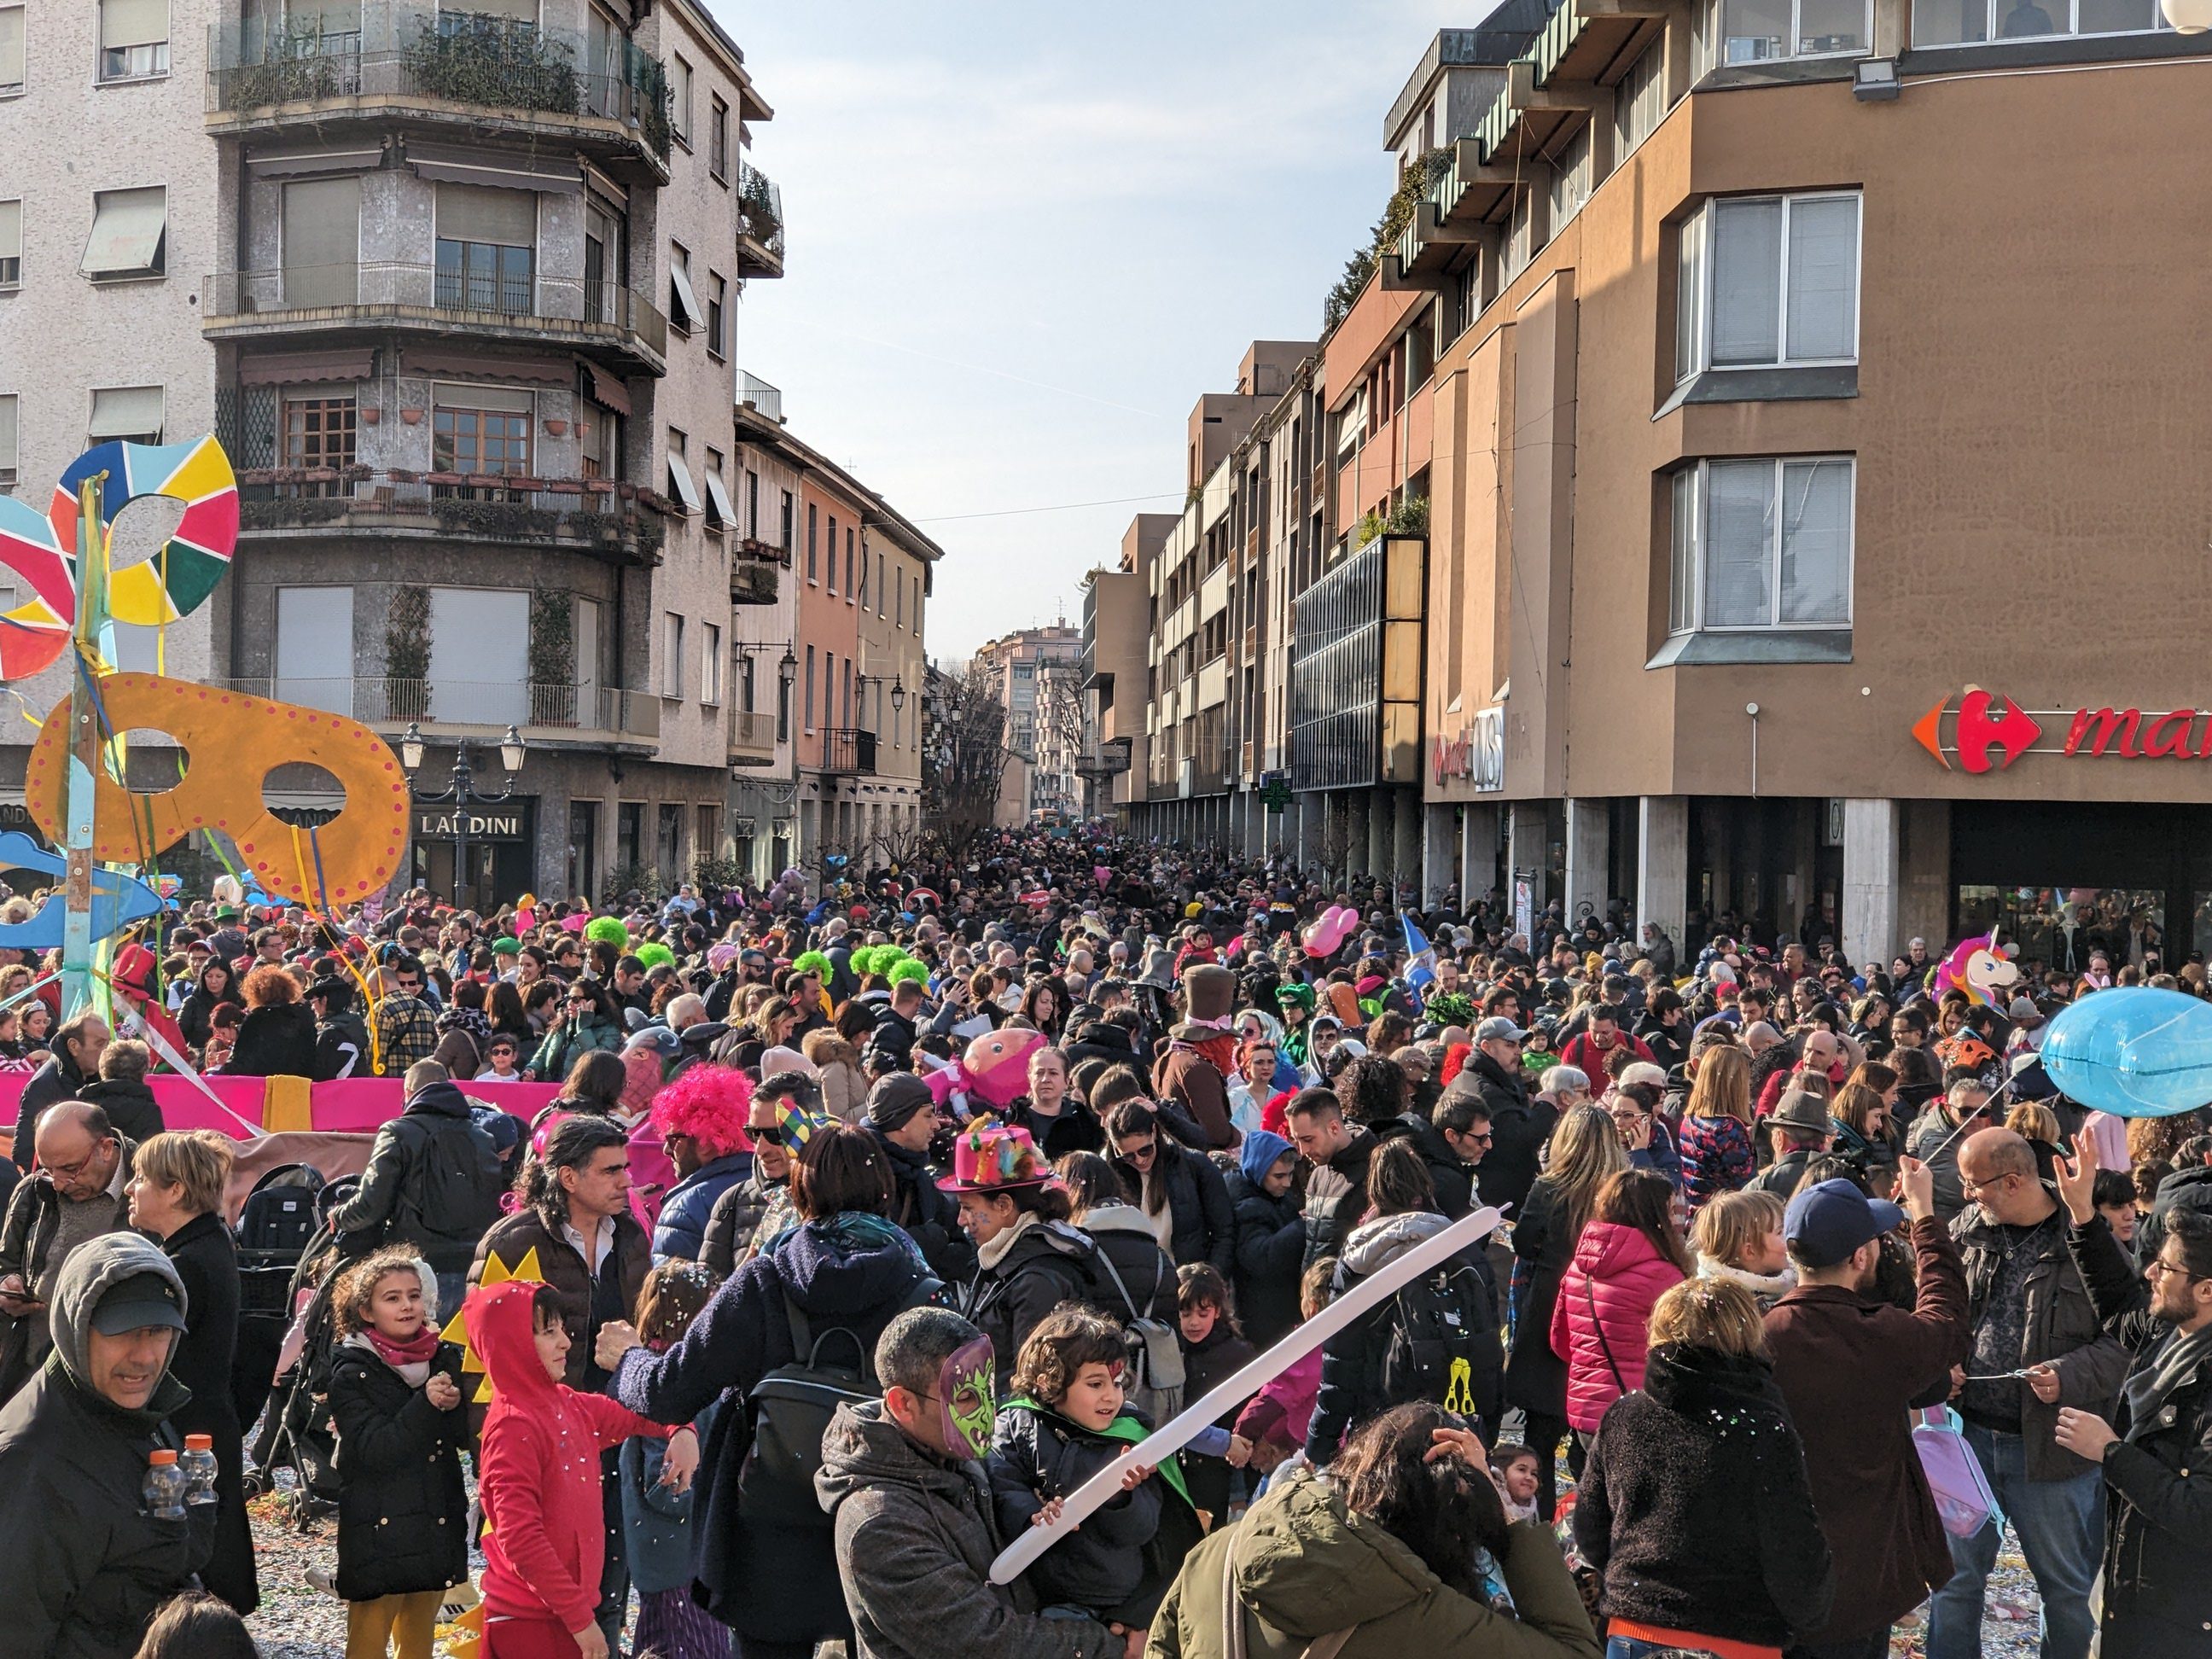 Saronno, Carnevale senza carri la Proloco li sogna “made in Saronno” e sostenibili